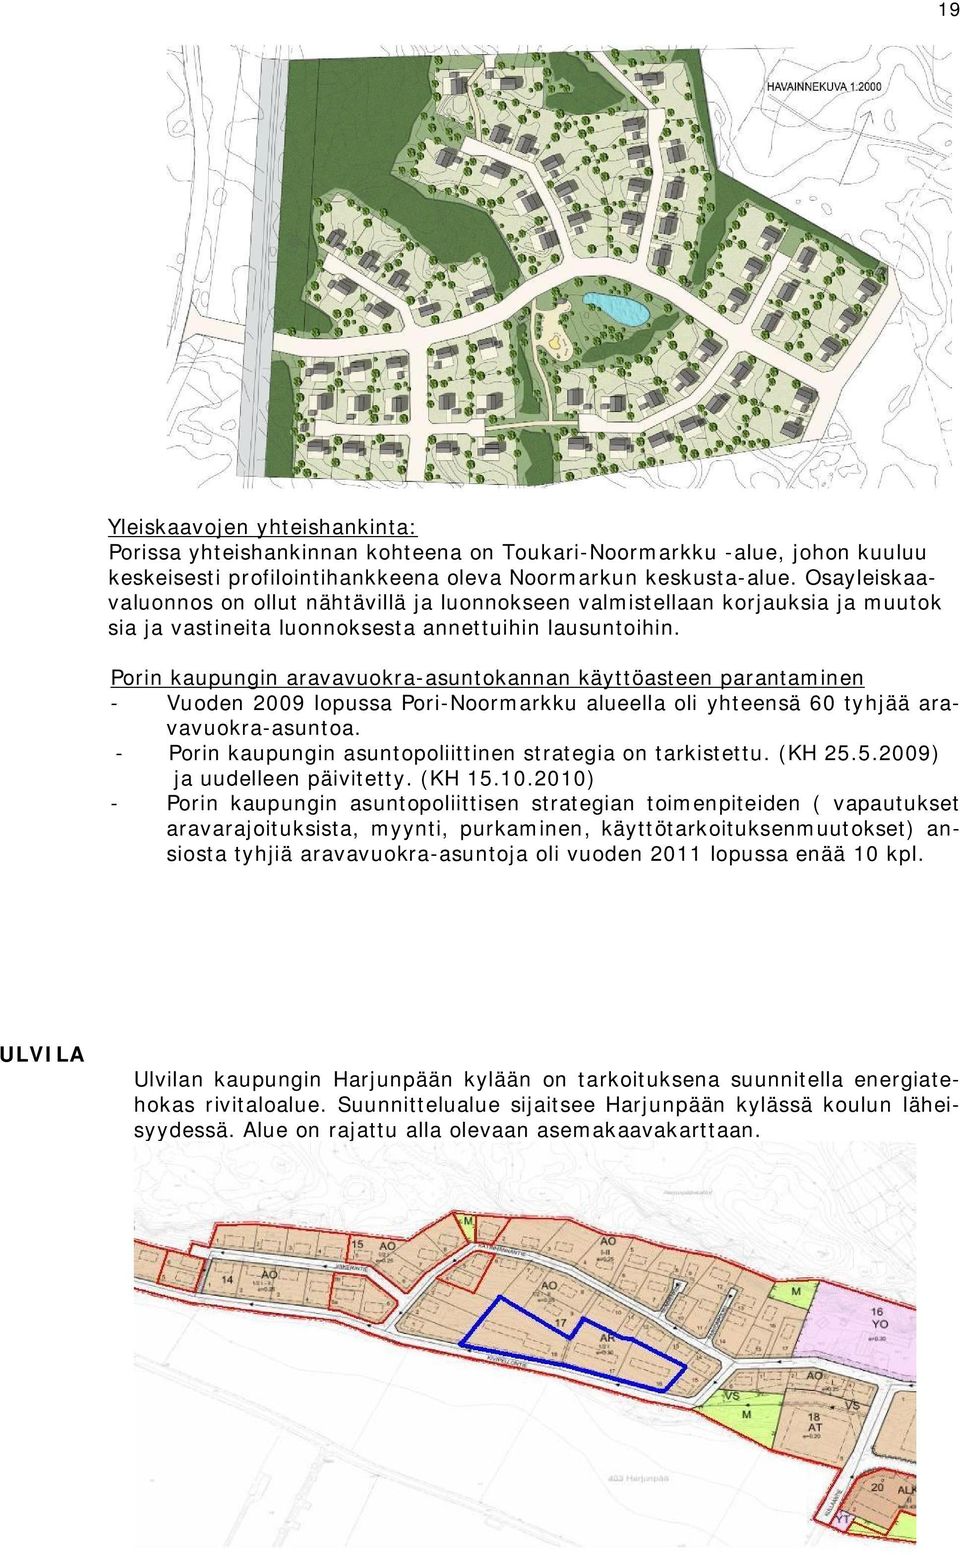 Porin kaupungin aravavuokra-asuntokannan käyttöasteen parantaminen - Vuoden 2009 lopussa Pori-Noormarkku alueella oli yhteensä 60 tyhjää aravavuokra-asuntoa.